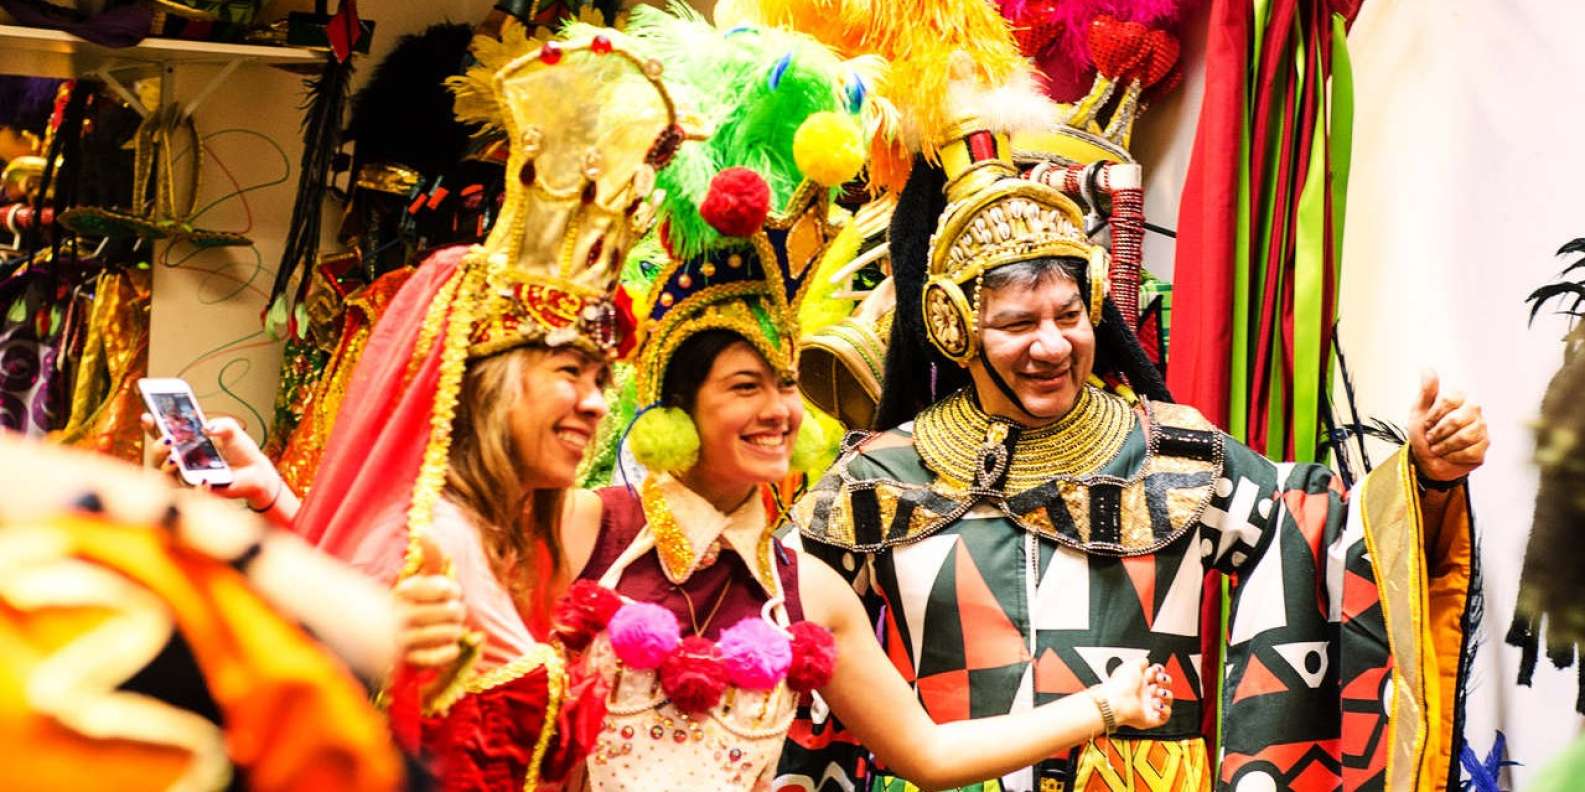 13 Fabulous Costumes From the Rio de Janeiro Carnival  Brazilian carnival  costumes, Rio carnival costumes, Rio carnival